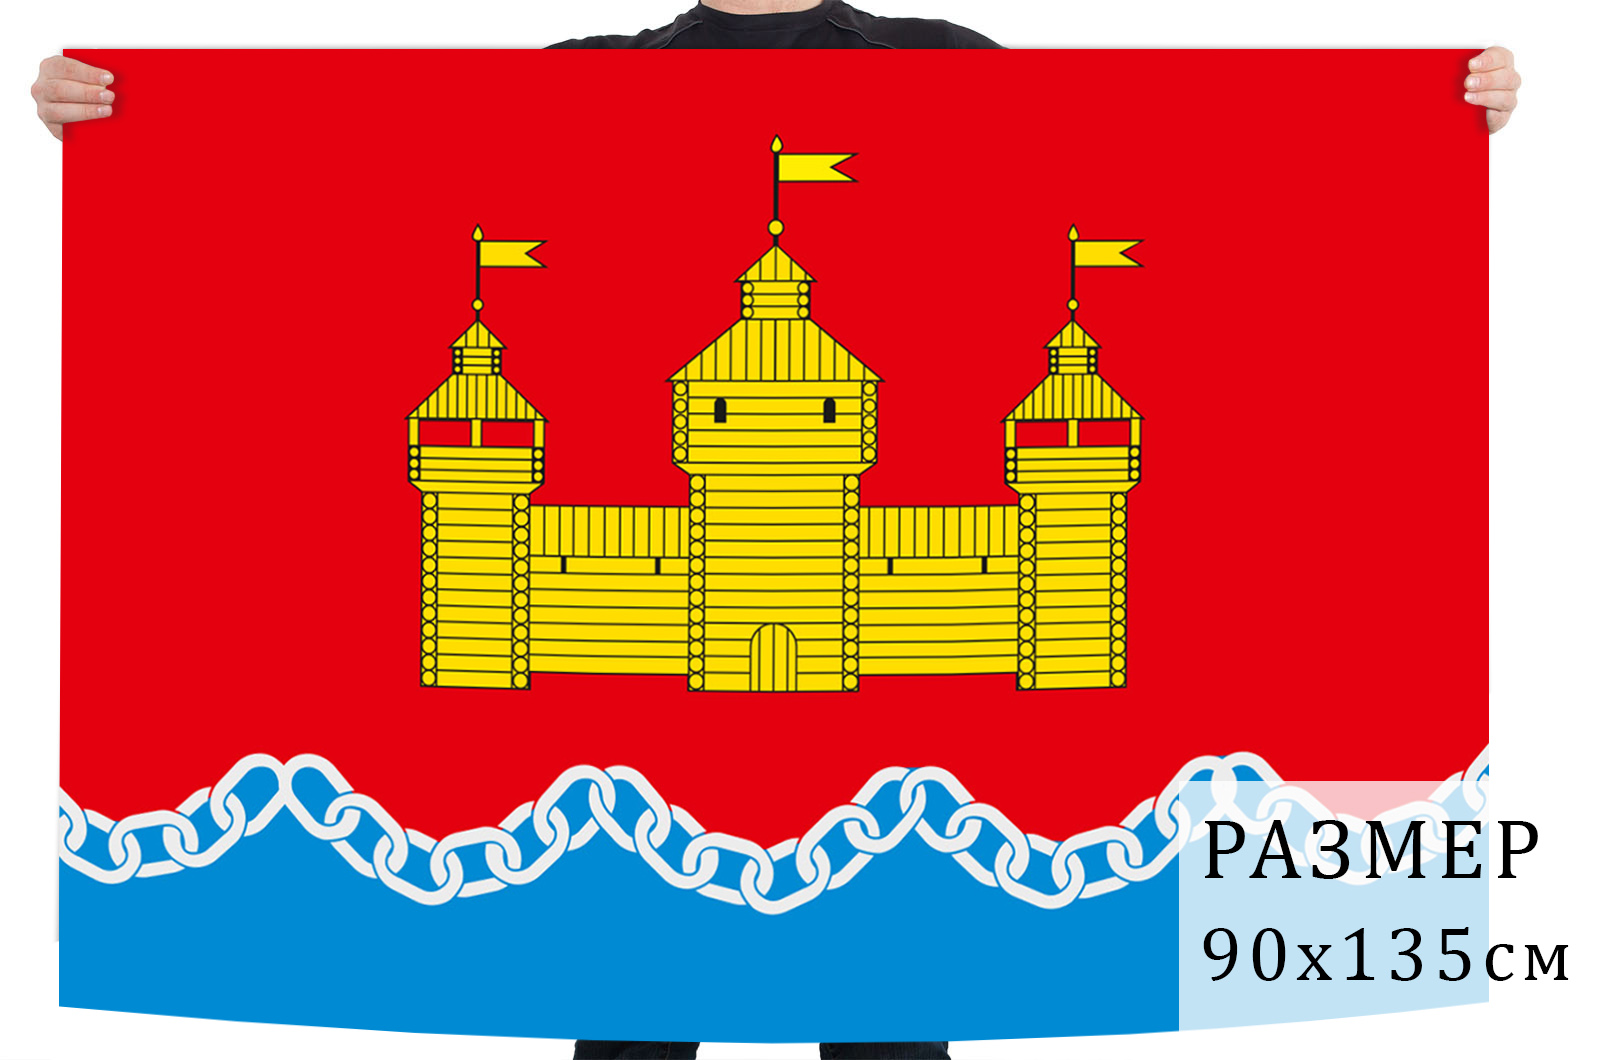 Флаг Добровского района